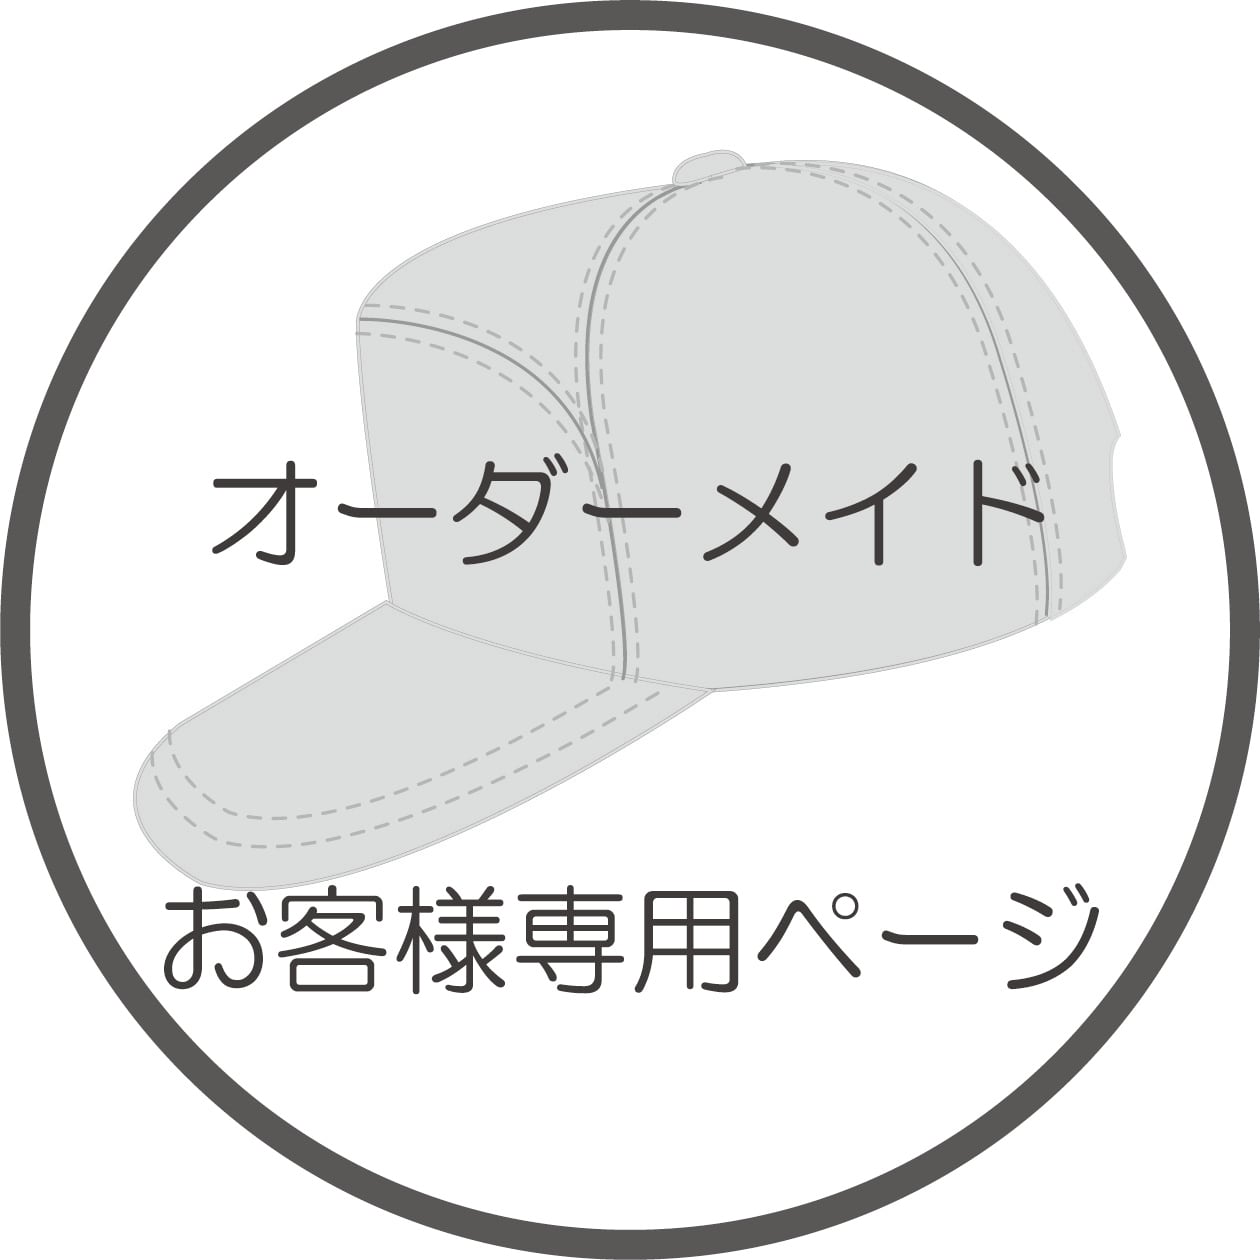 H様専用ページオーダーメイド【標準サイズ・L】誠実堂製帽所オリジナル